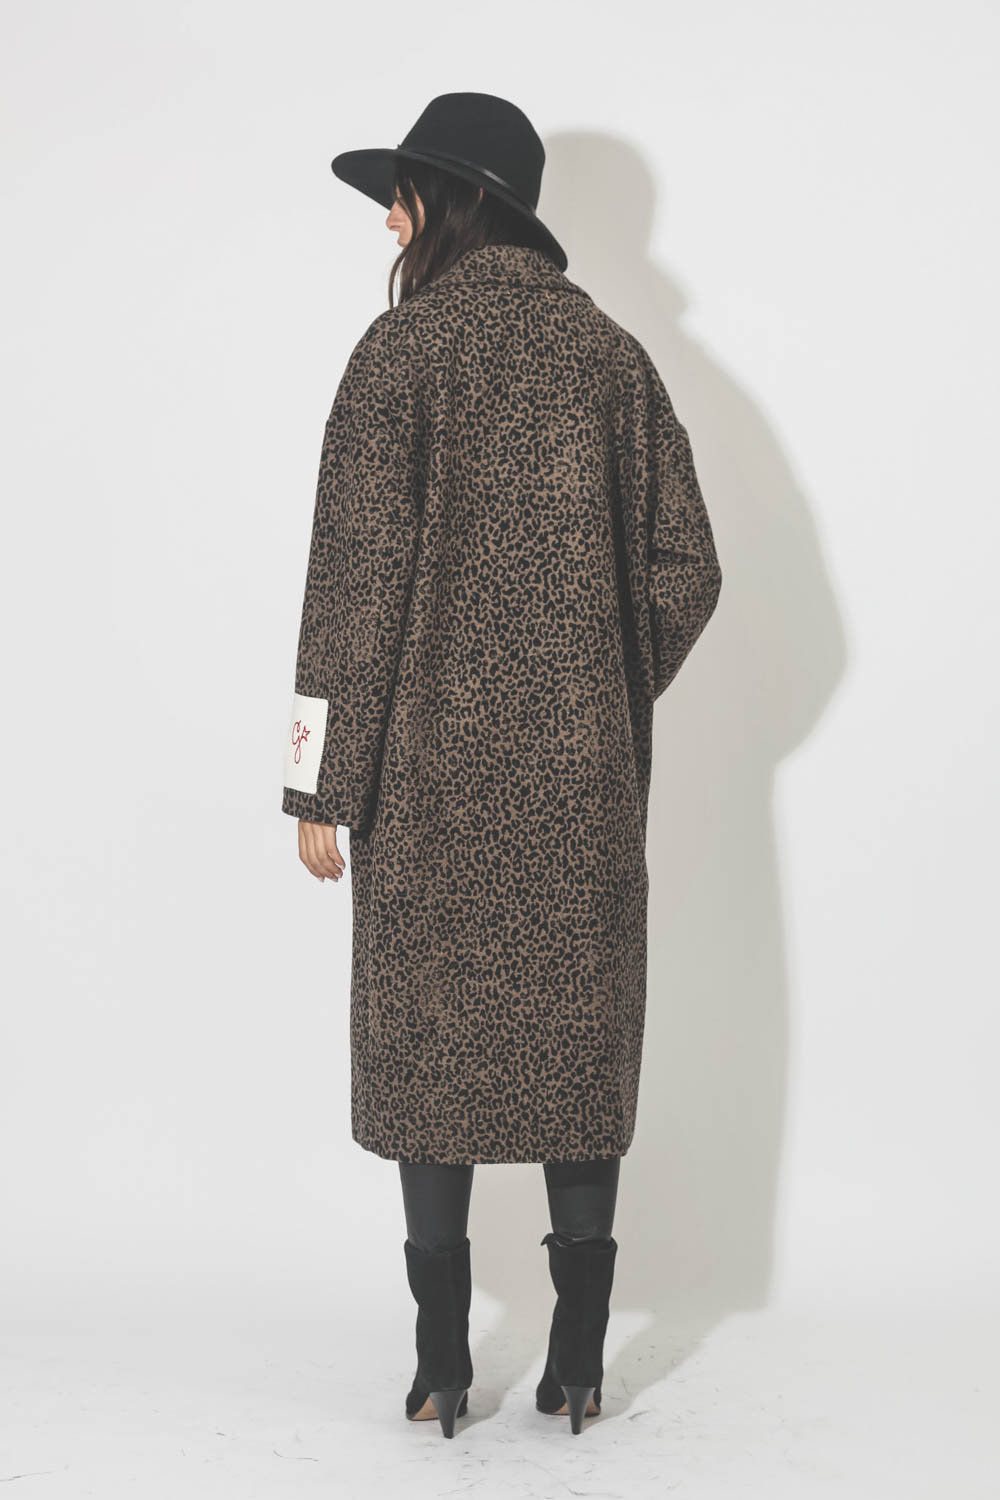 Manteau oversize en tissu damassé léopard marron et noir Cocoon Coat Golden Goose. Porté de dos.